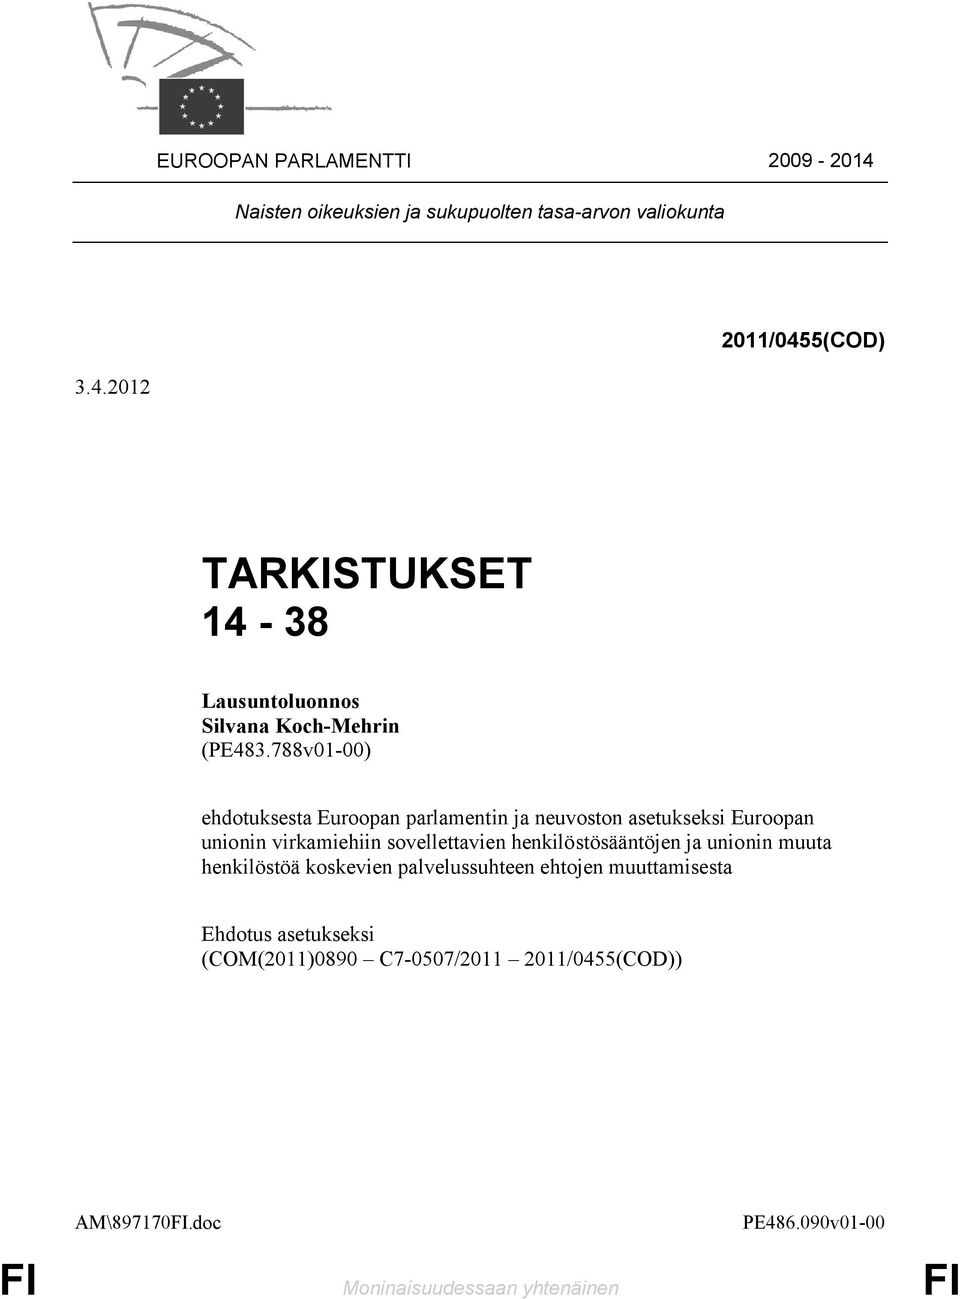 henkilöstösääntöjen ja unionin muuta henkilöstöä koskevien palvelussuhteen ehtojen muuttamisesta (COM(2011)0890